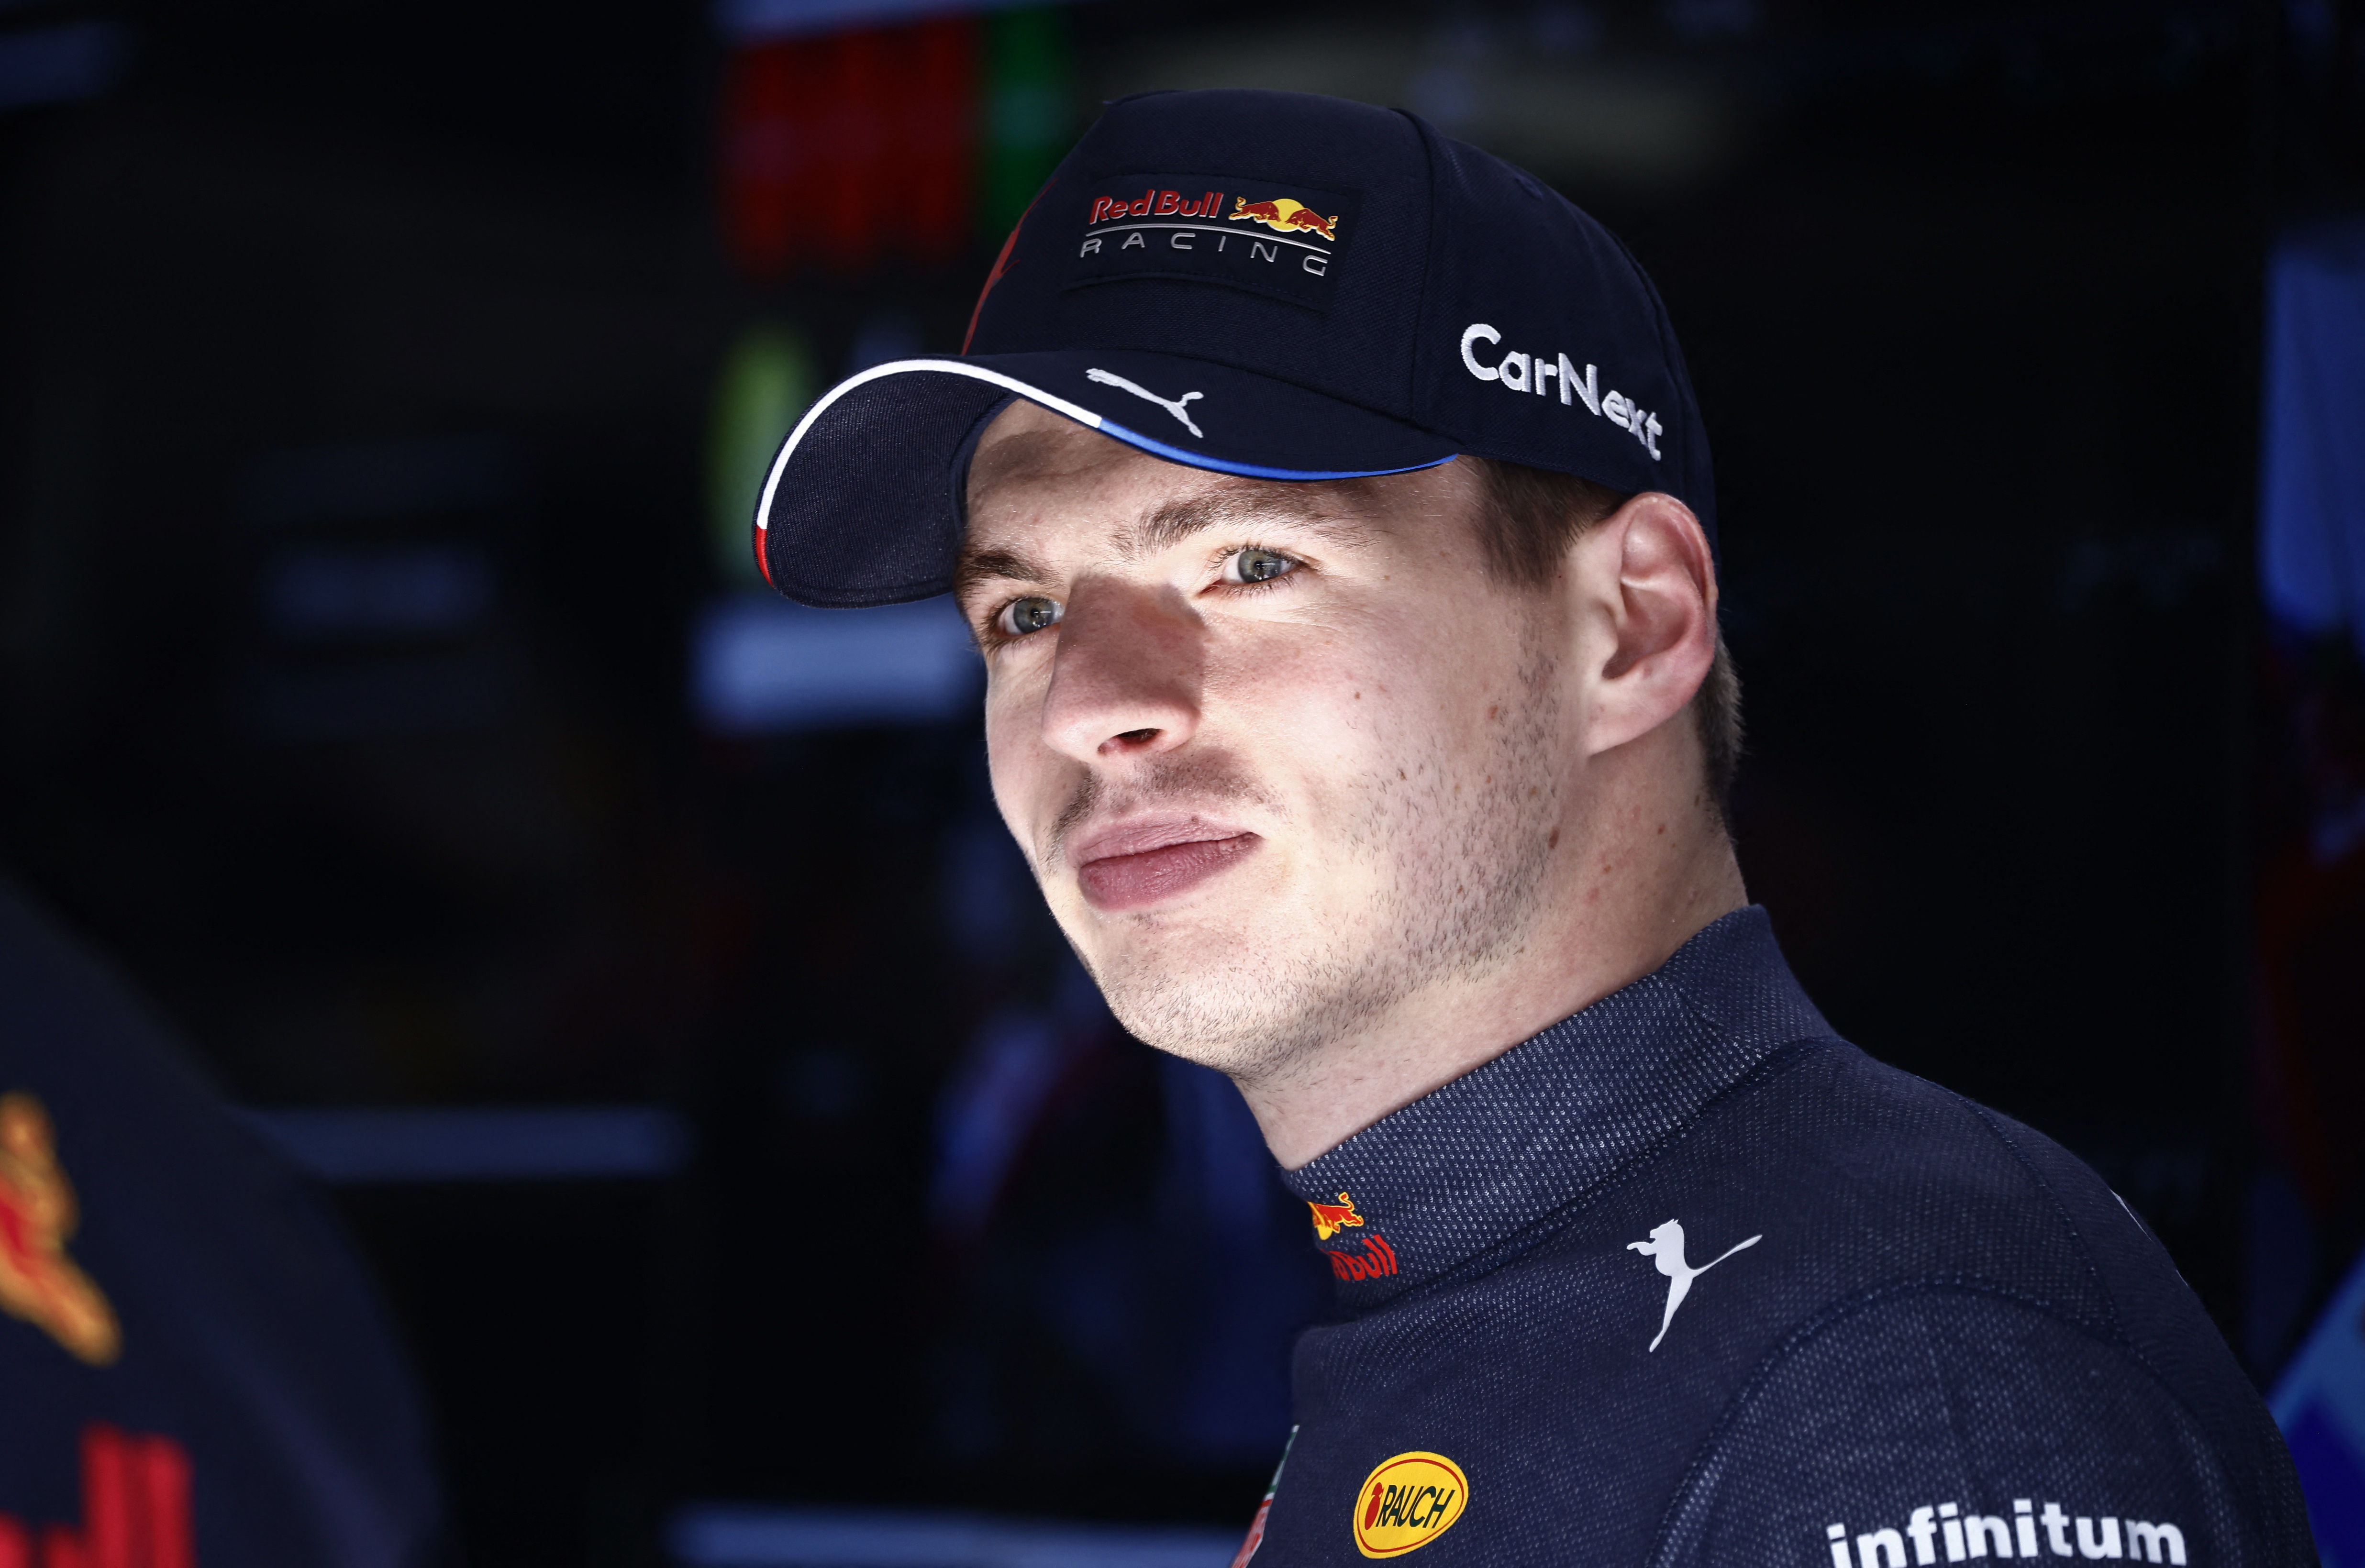 Max Verstappen quiere alzarse con la victoria para afirmarse en los más alto (Reuters)